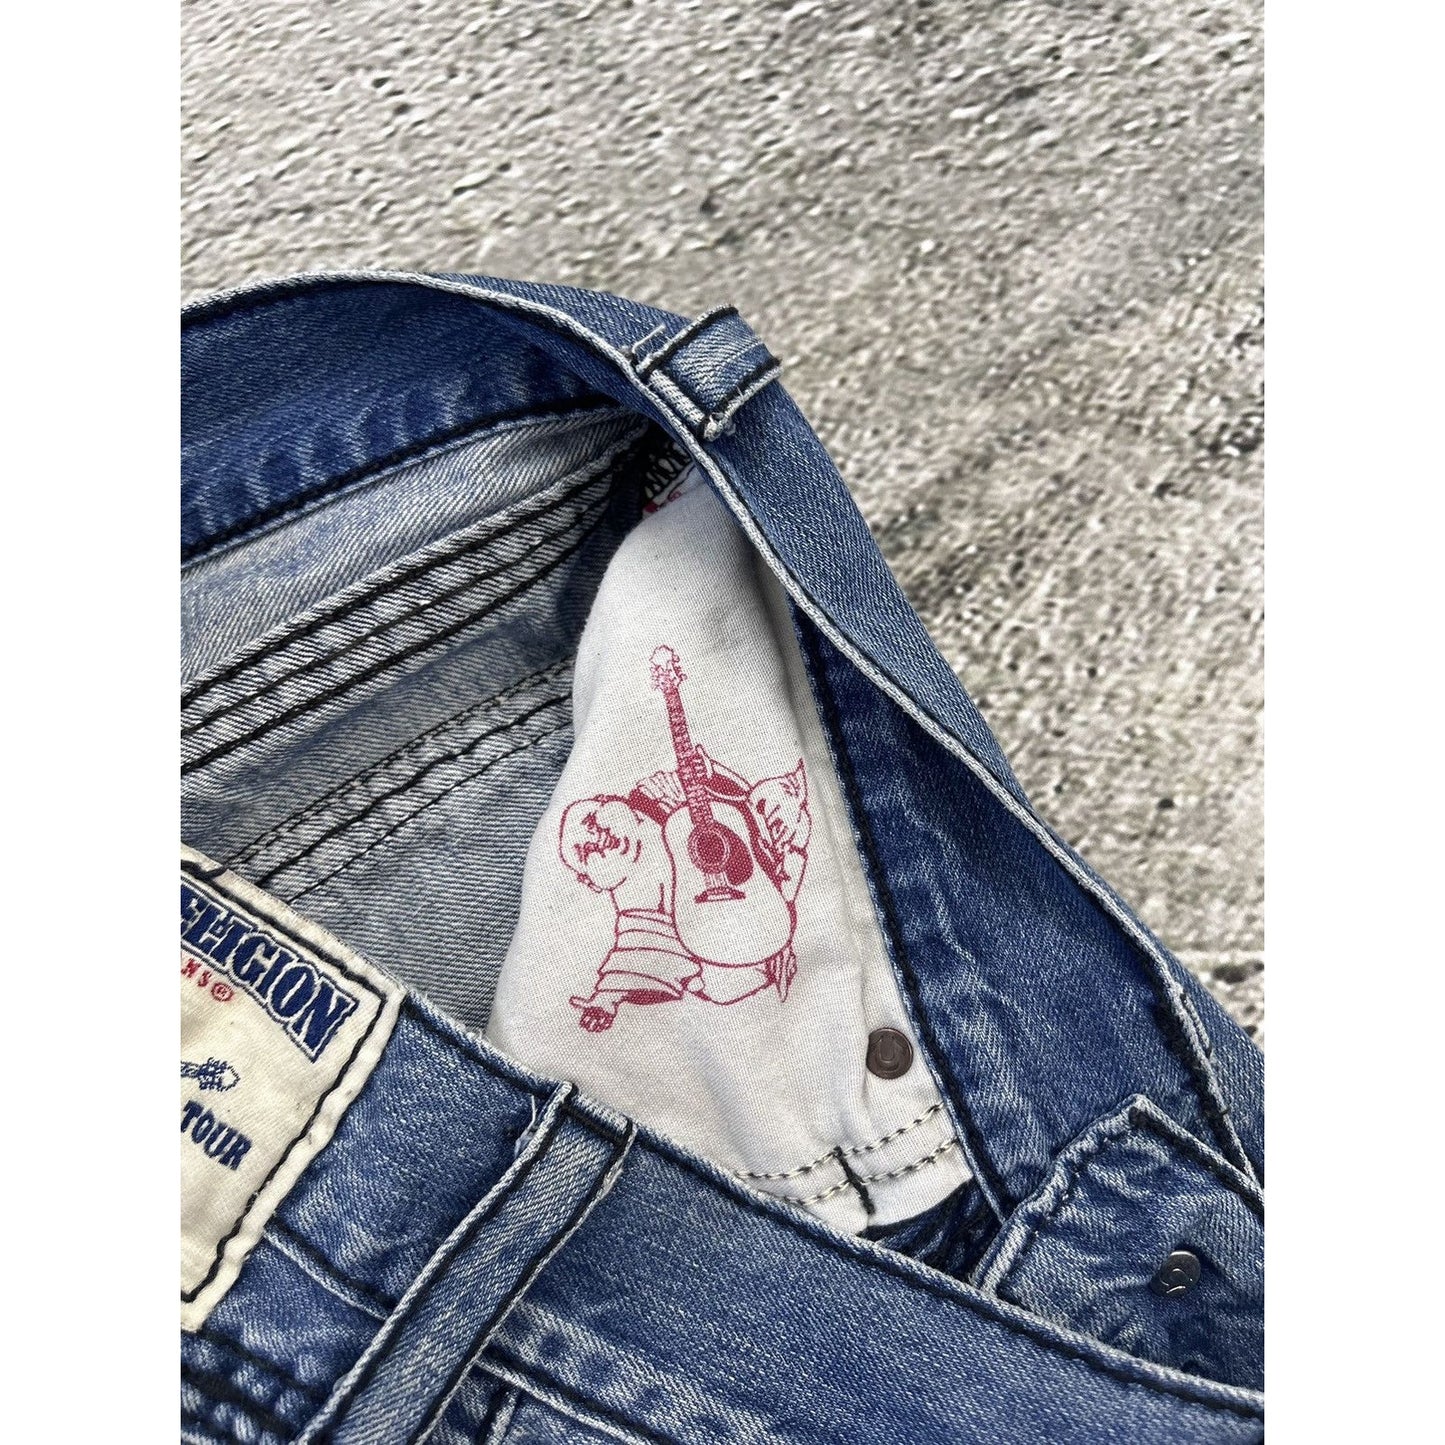 True Religion baby blue jeans black stitching Y2K